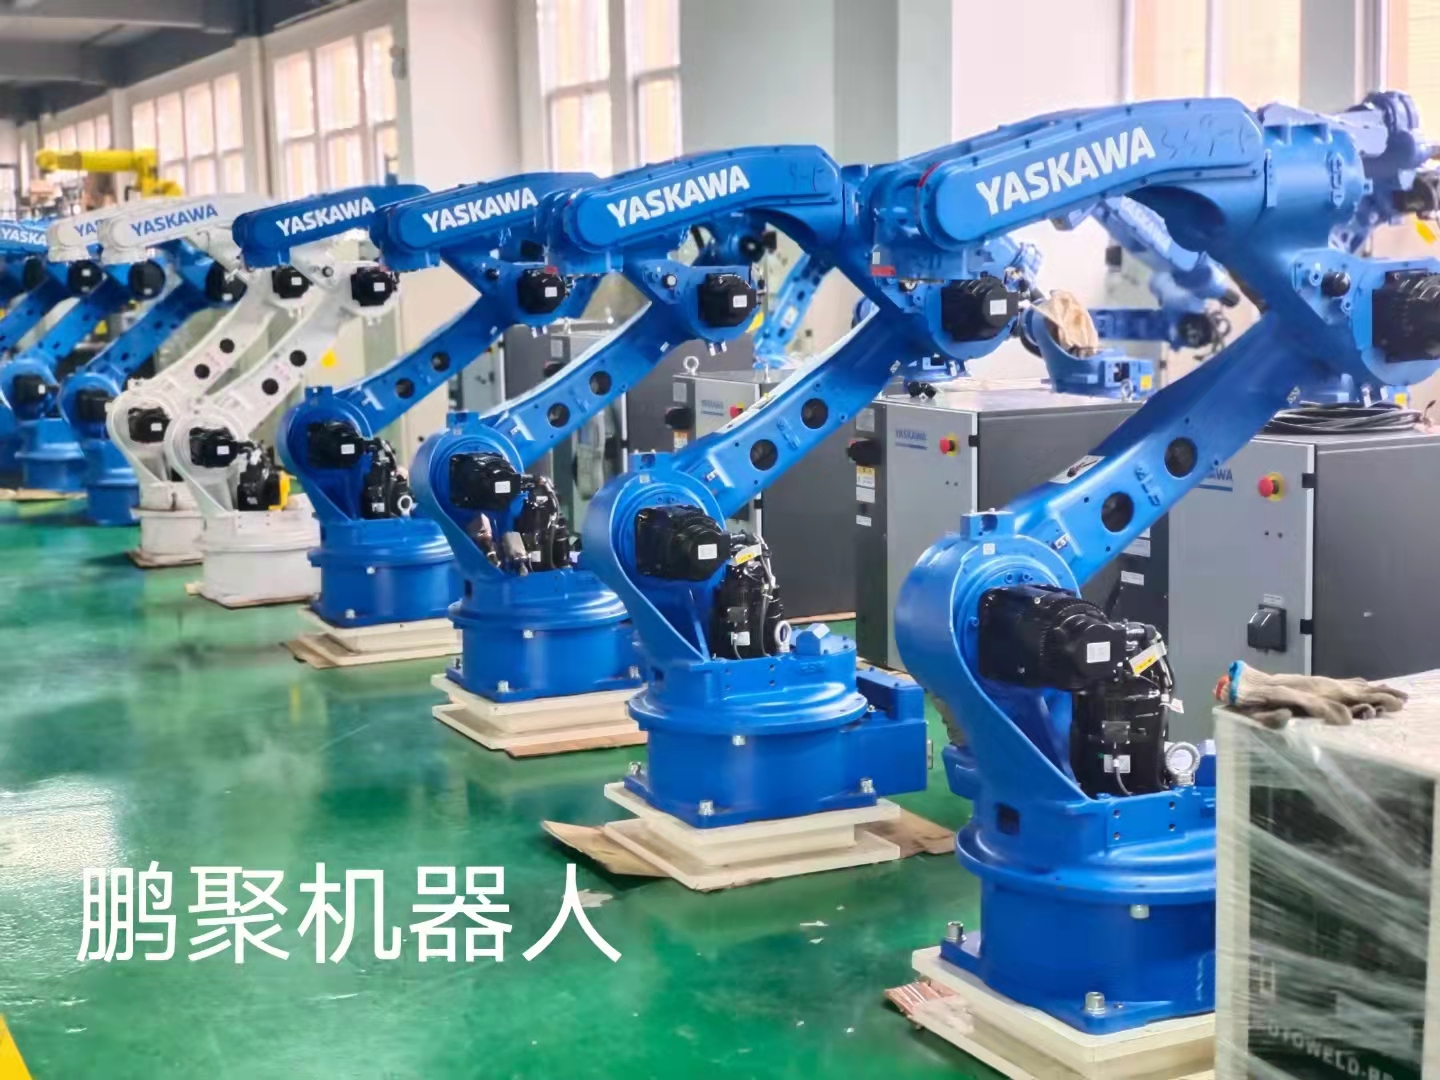 二手进口工业机器人 焊机机器人 安川mh24